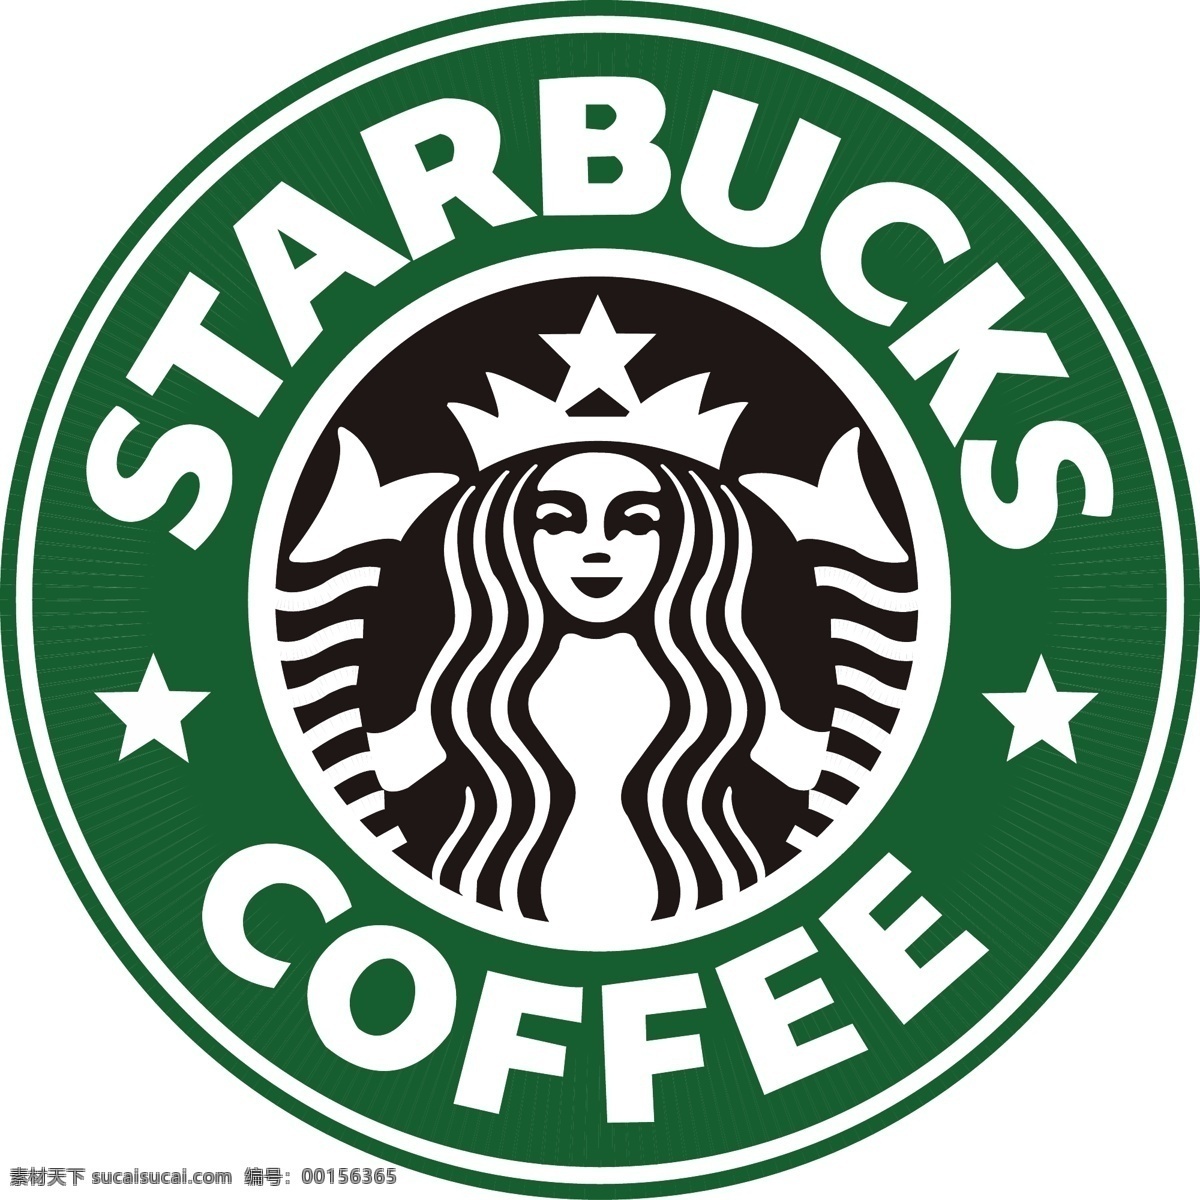 星 巴克 logo 图片jpg 咖啡 星巴克饮料 logo设计